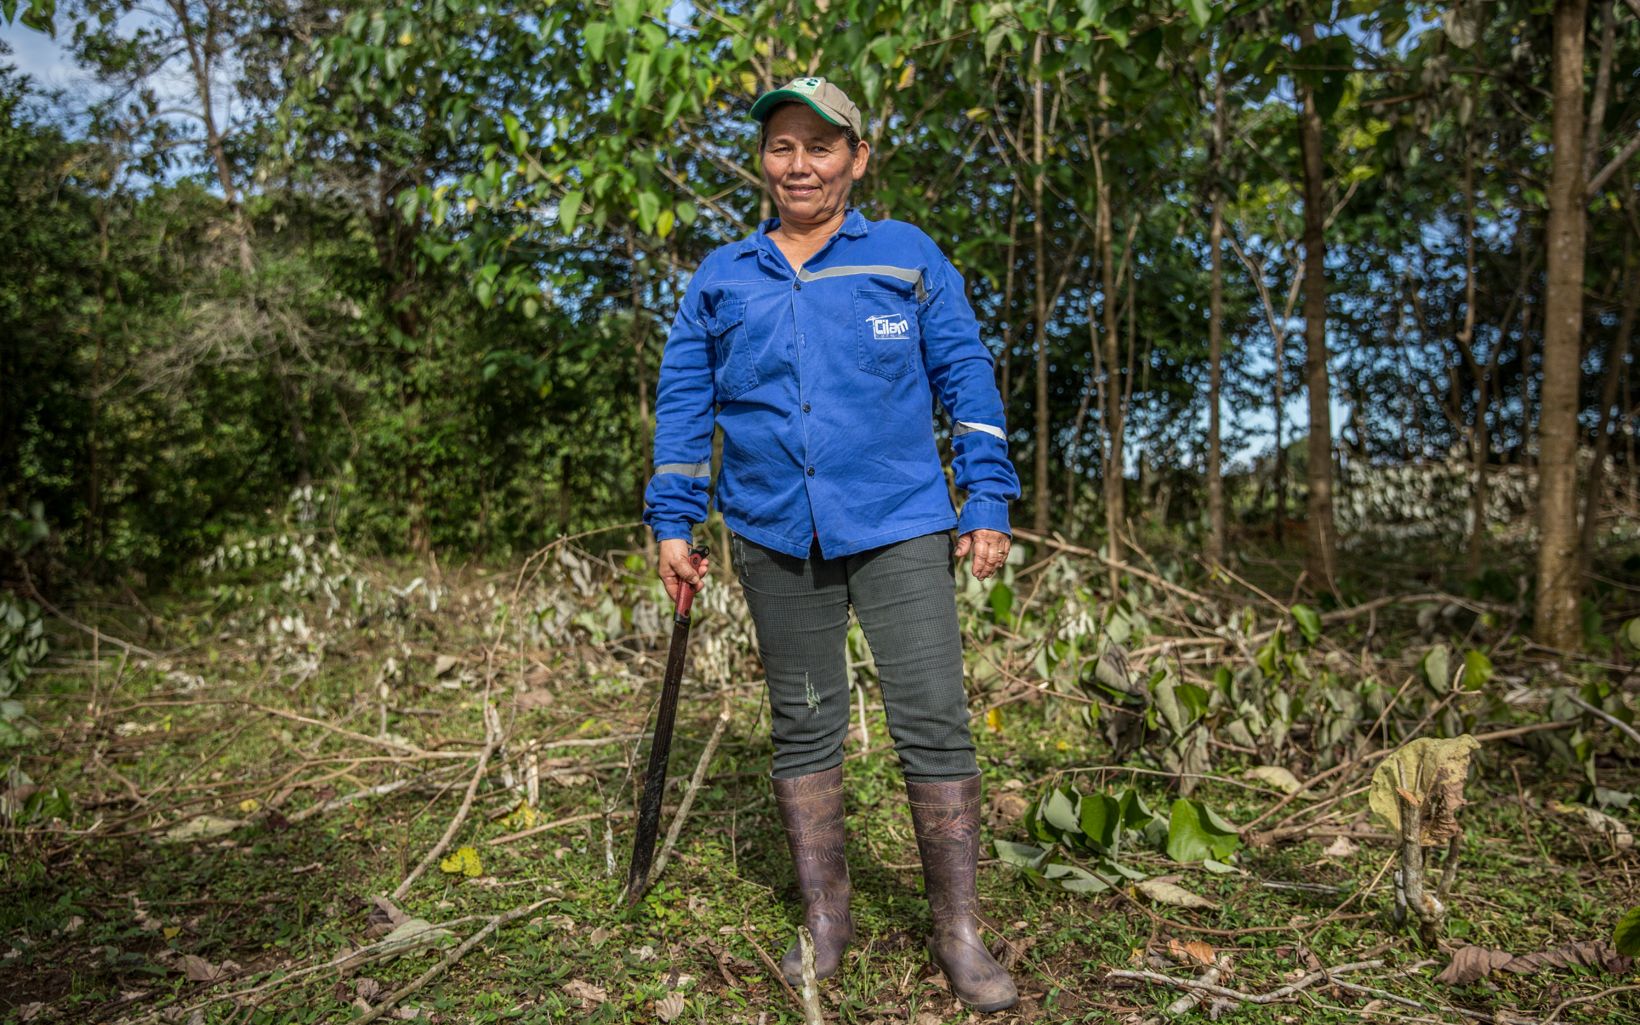 Manejar mejor los suelos evita la deforestación y trae diversidad de recursos adicionales a familias de escasos recursos, como la de Mercedes